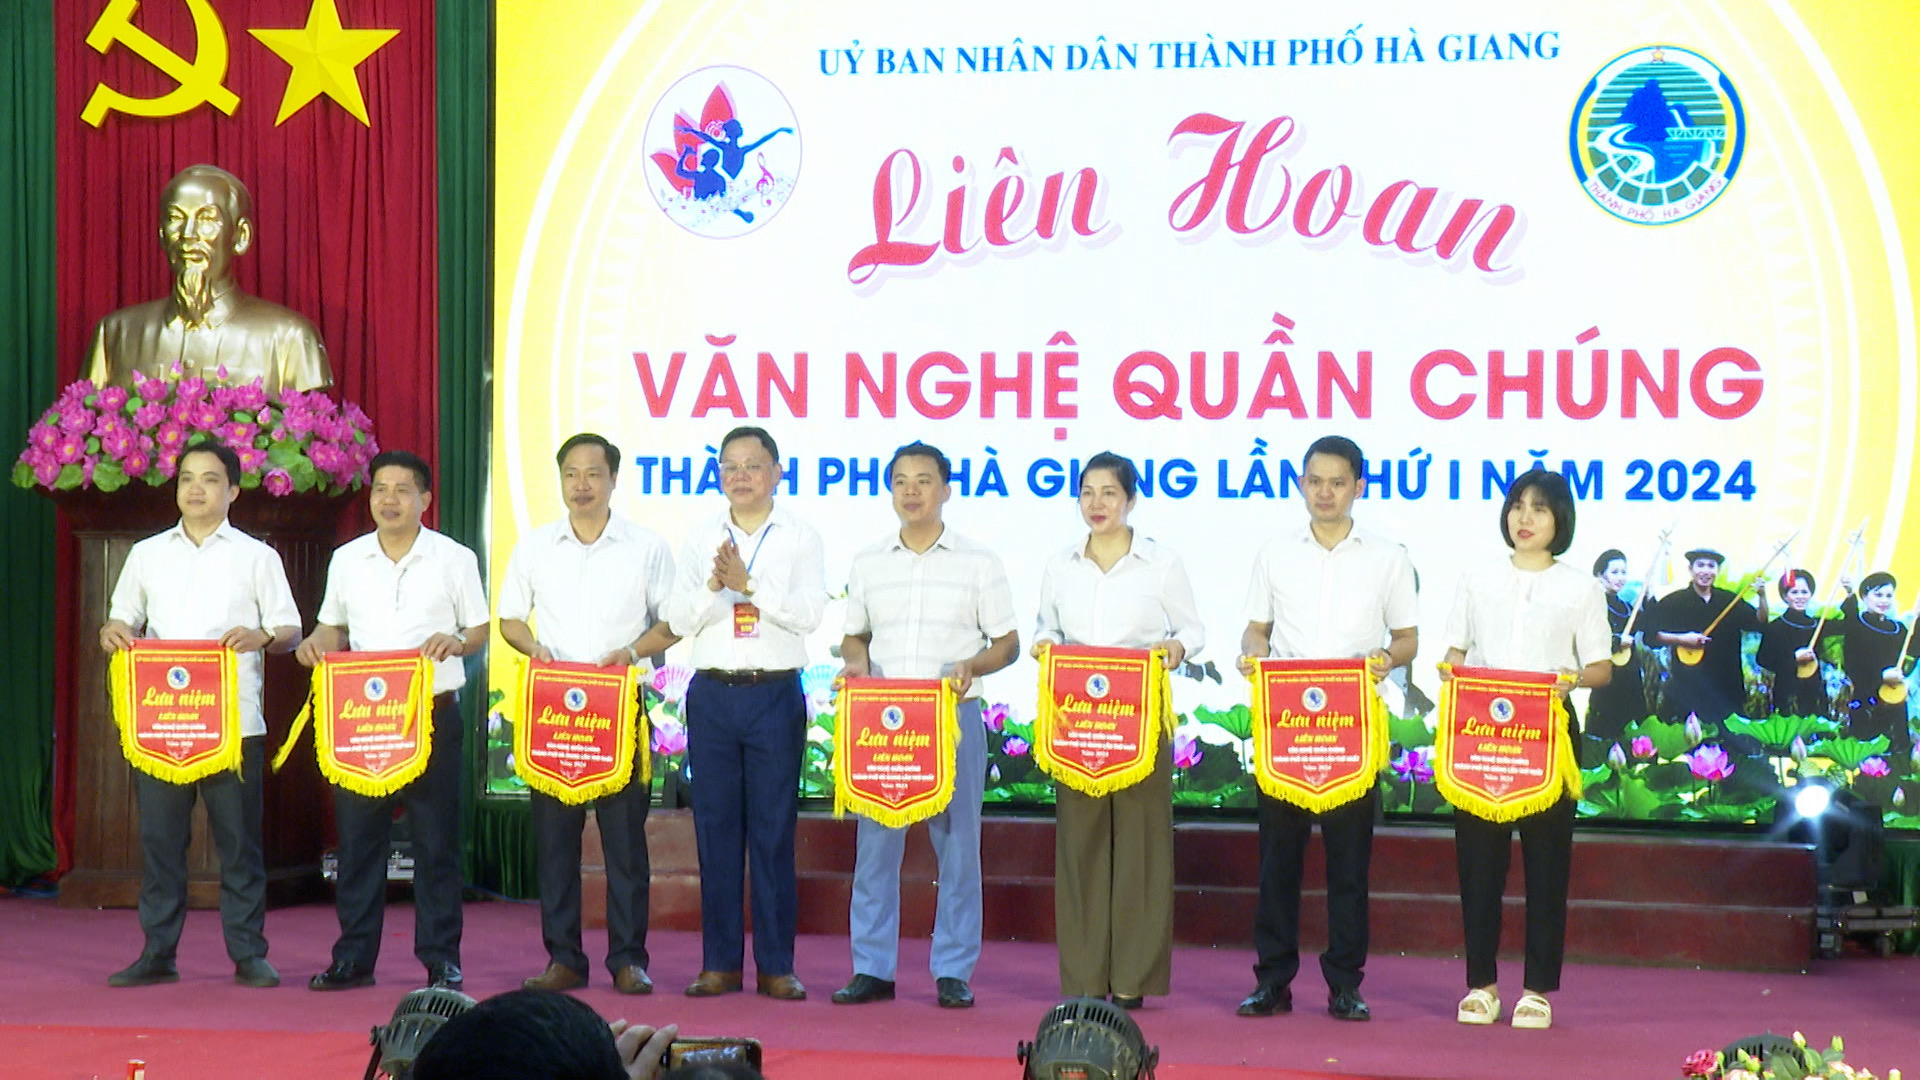 Phường Ngọc Hà tham gia Hội thi Liên hoan văn nghệ quần chúng lần thứ Nhất Thành phố Hà Giang năm 2024